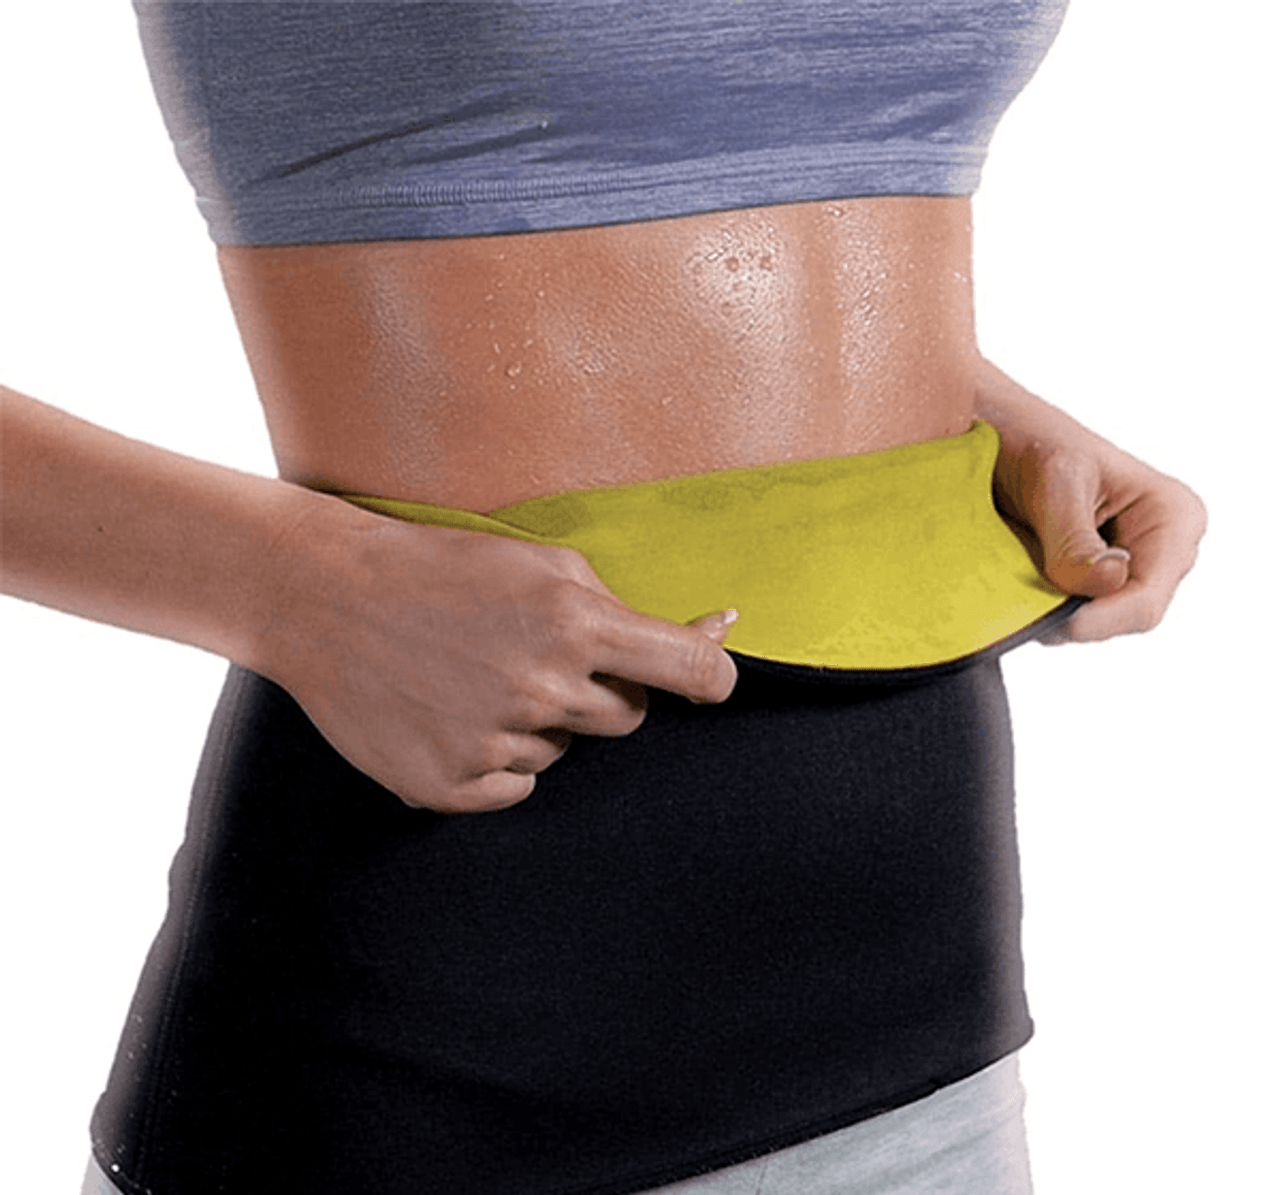 Buy Fitolym Unisex Hot Body Shaper Neoprene Slimming Belt Tummy